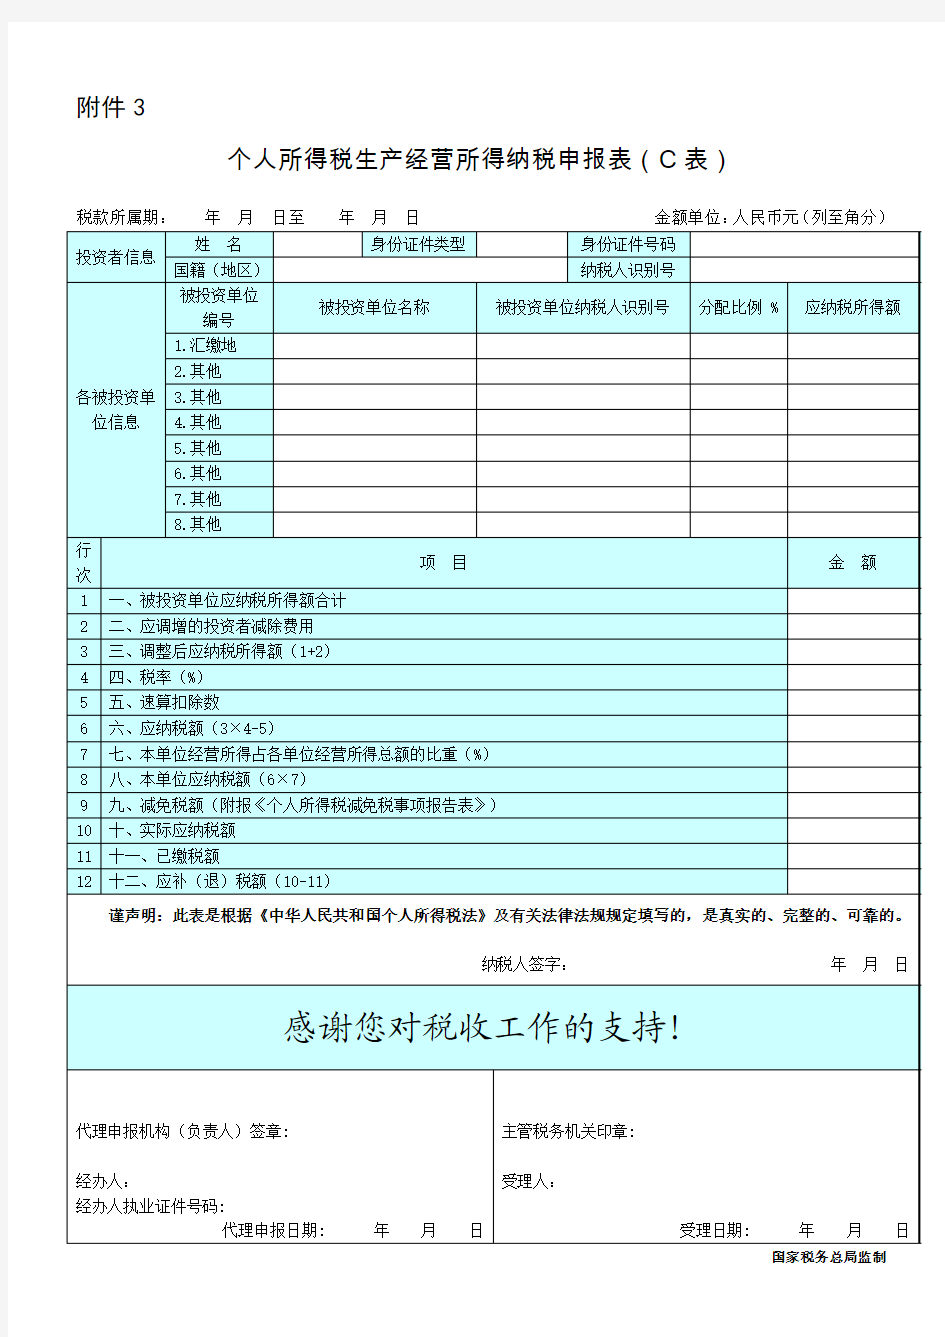 个人所得税生产经营所得纳税申报表(C表)